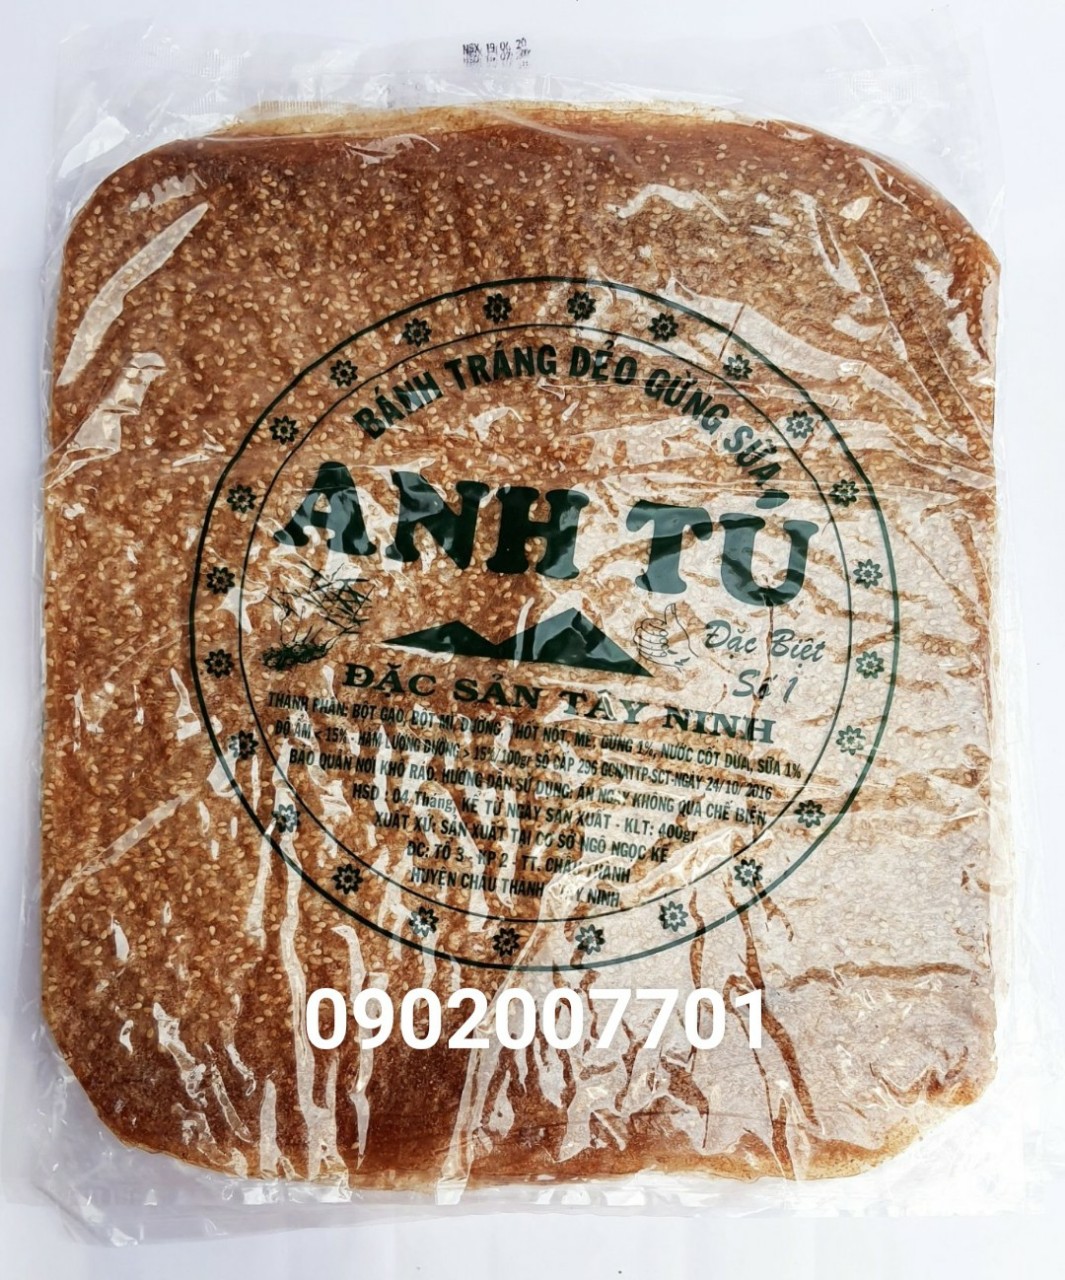 Xấp 400g Bánh Tráng Dẻo Gừng Sữa Anh Tú Chữ Xanh-đồ ăn vặt-tết-Đặc Sản Tây Ninh